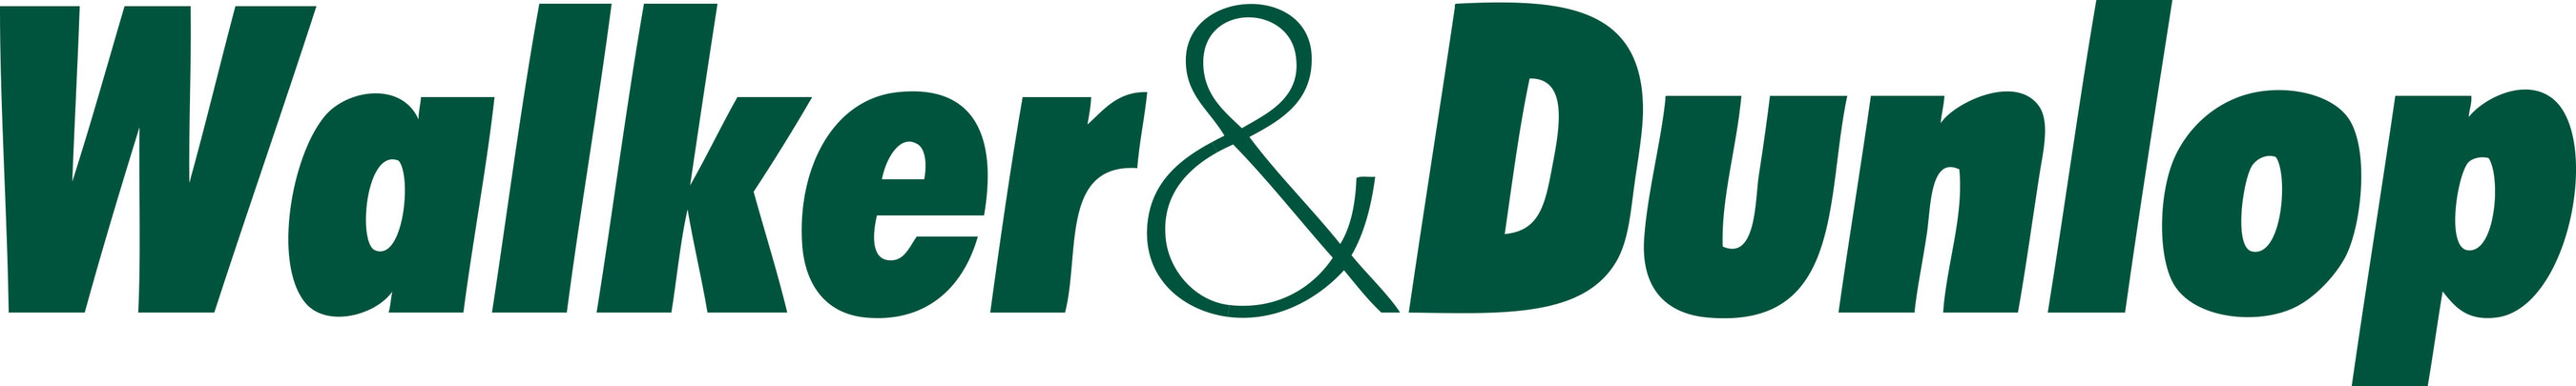 Walker & Dunlop, Inc. logo